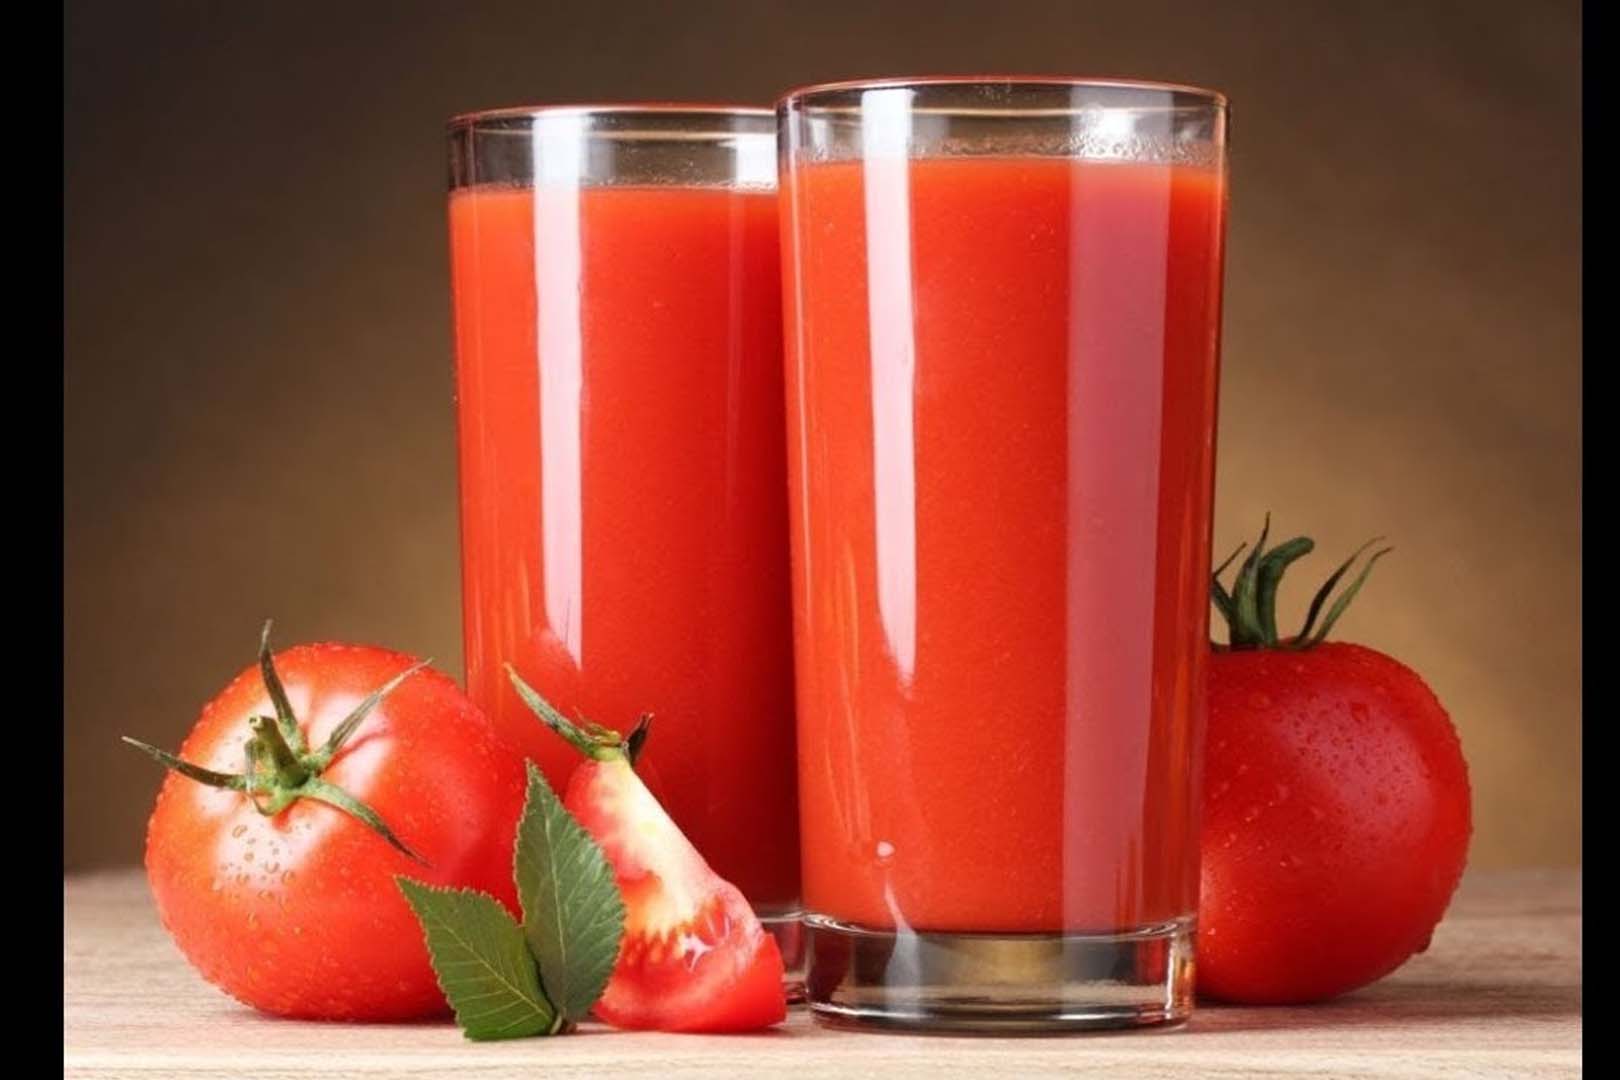 Manfaat Jus Tomat: Memperkuat Kesehatan dan Cara Pembuatannya